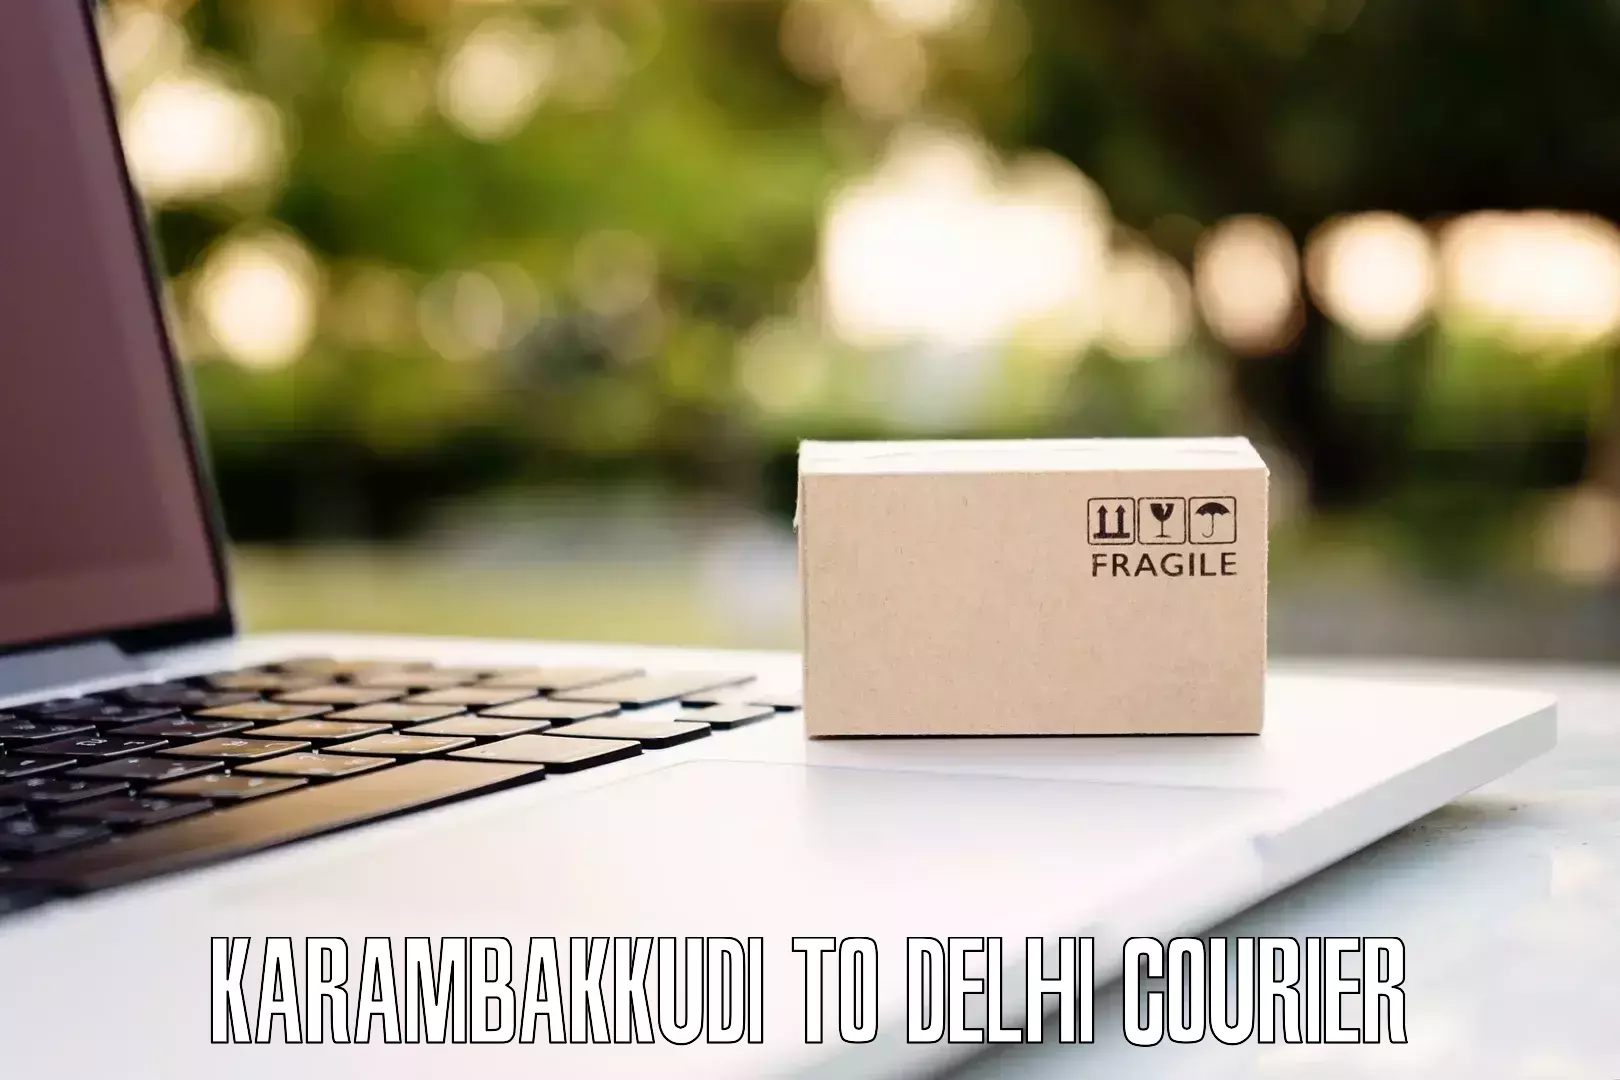 Customized luggage delivery Karambakkudi to University of Delhi